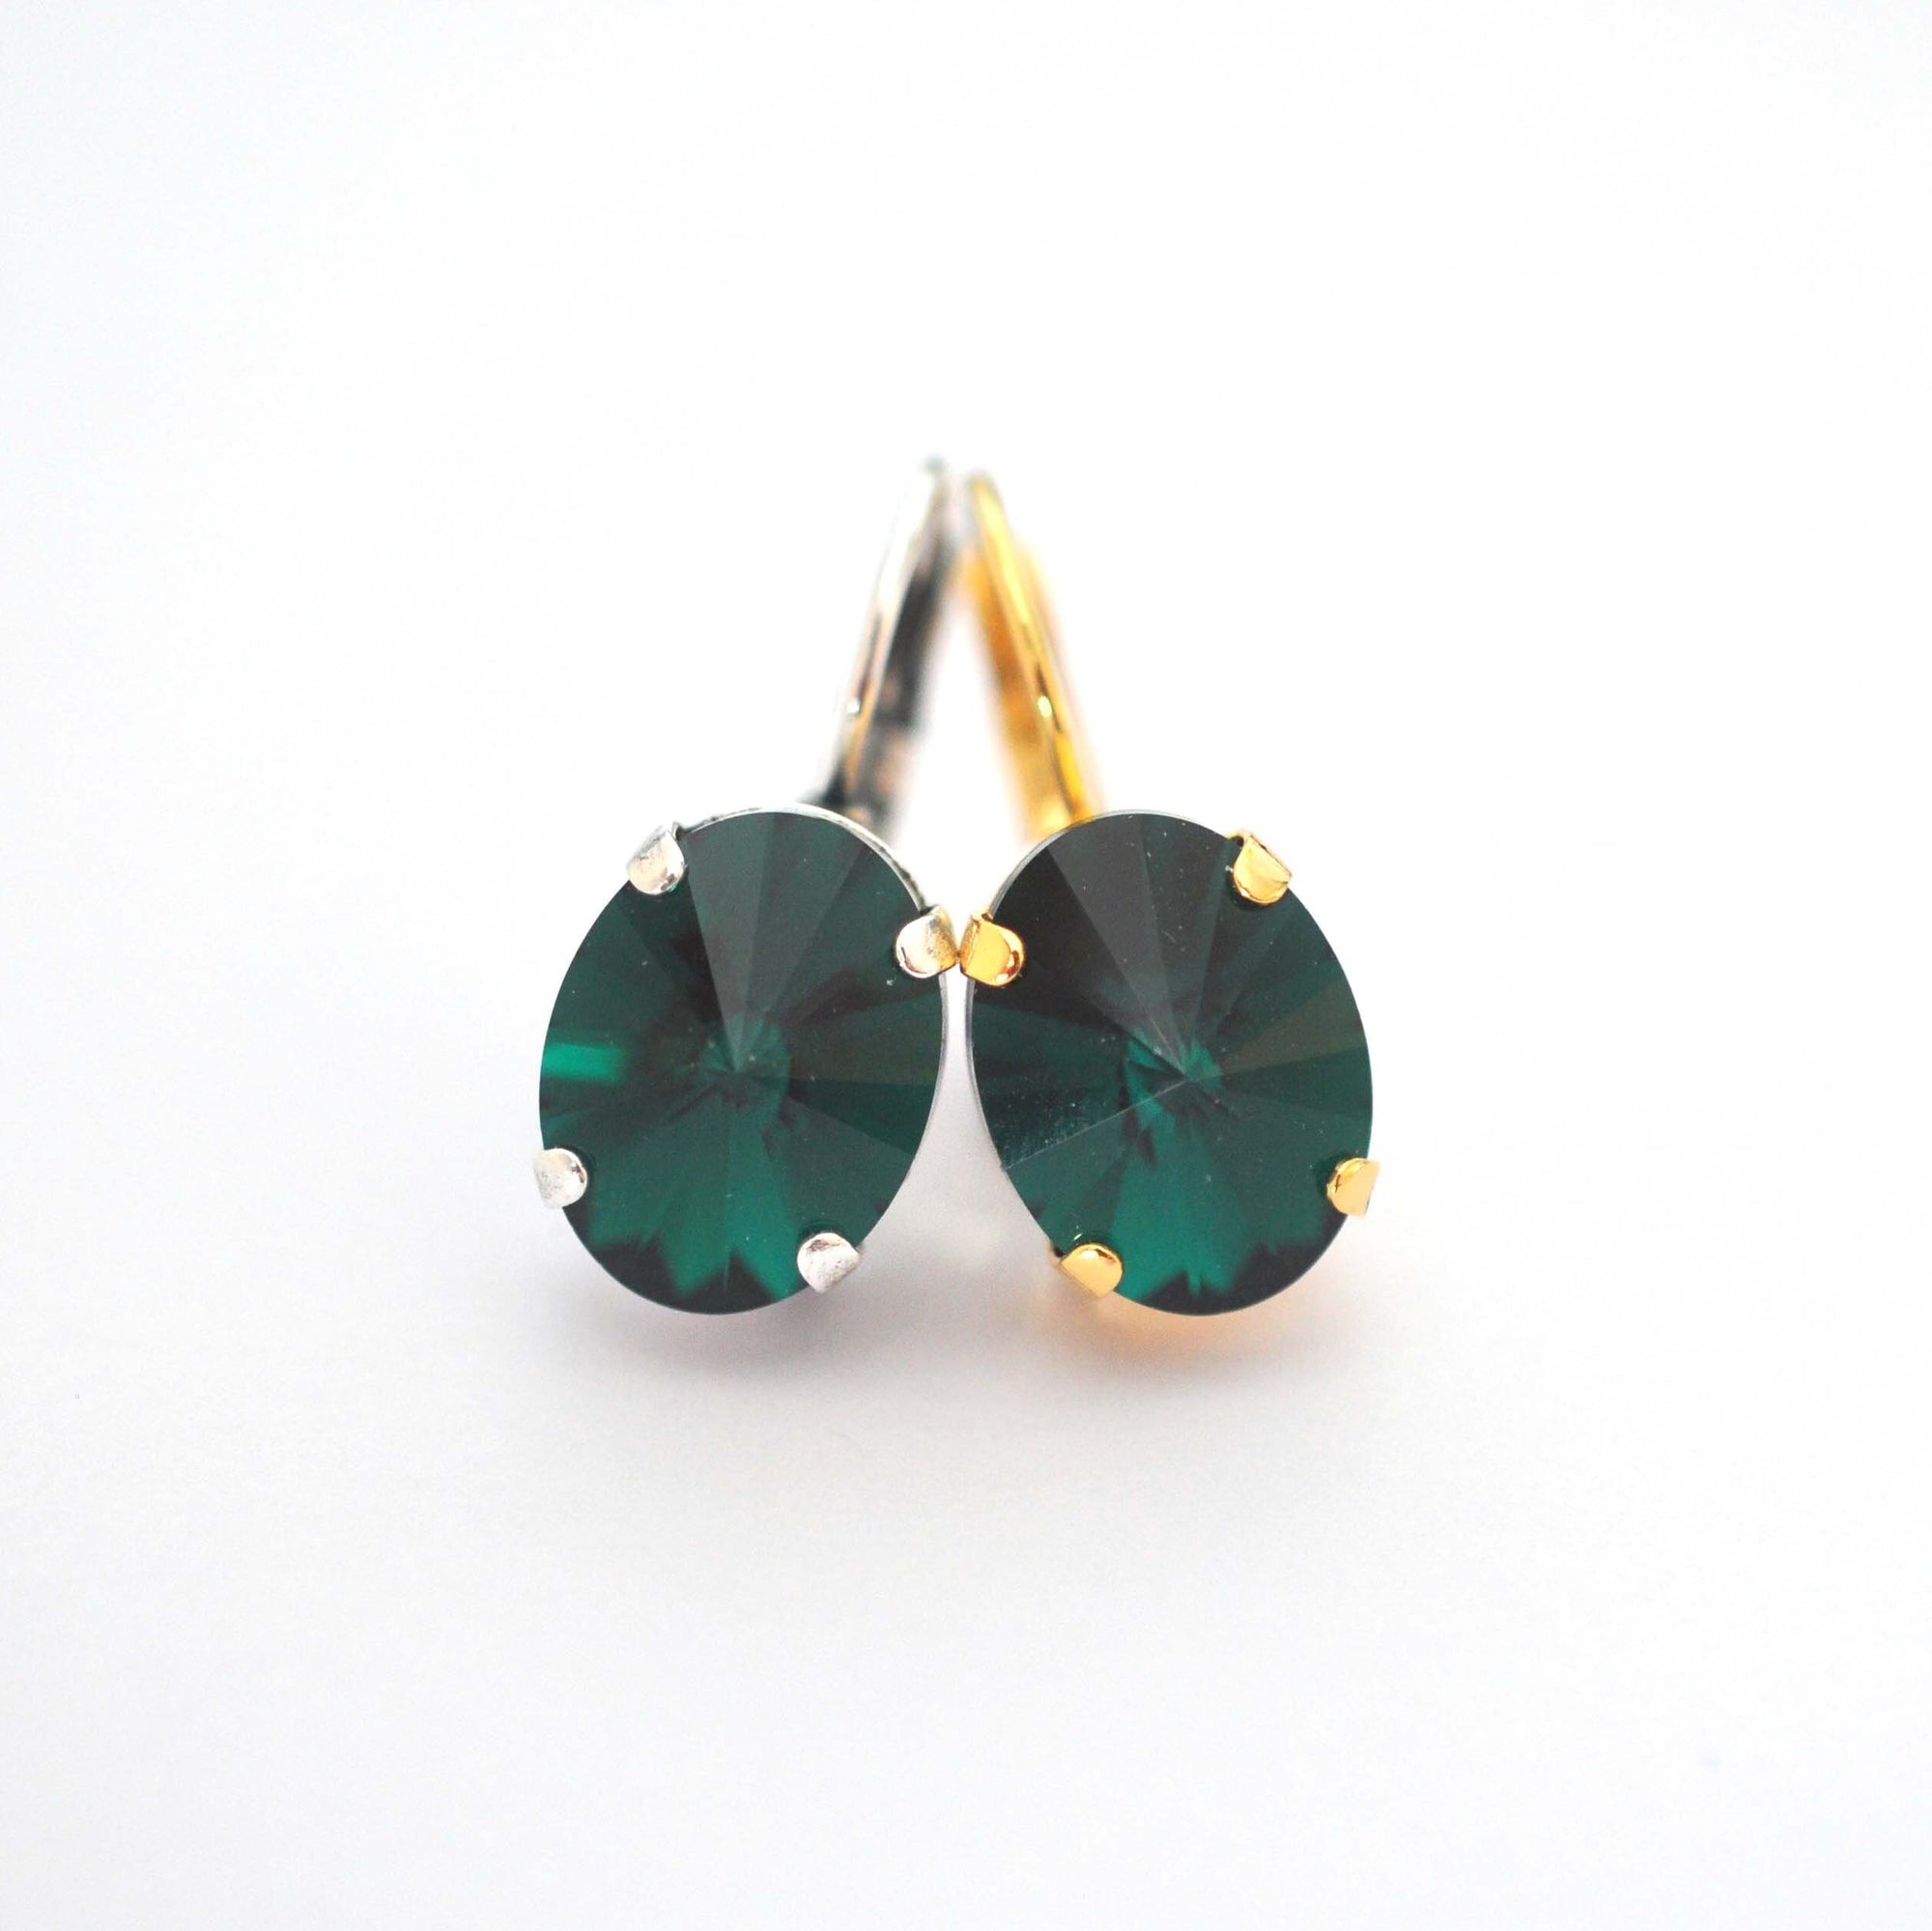 Emerald Green Oval Earring Kit